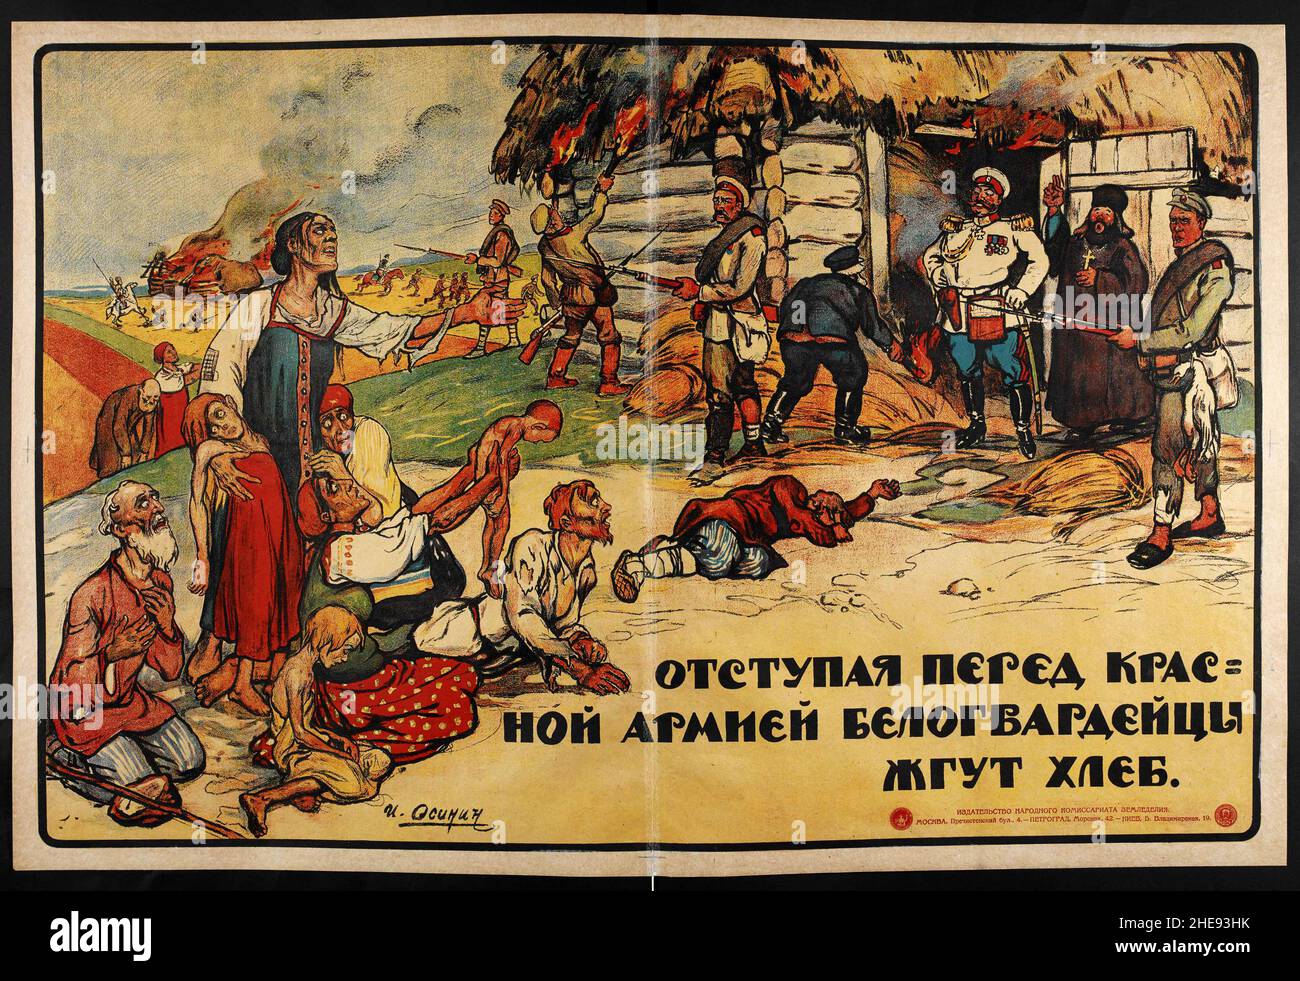 Une affiche de propagande soviétique montrant des soldats russes blancs qui brûlent un village avec la légende « en retraite, les blancs brûlent des cultures » Banque D'Images